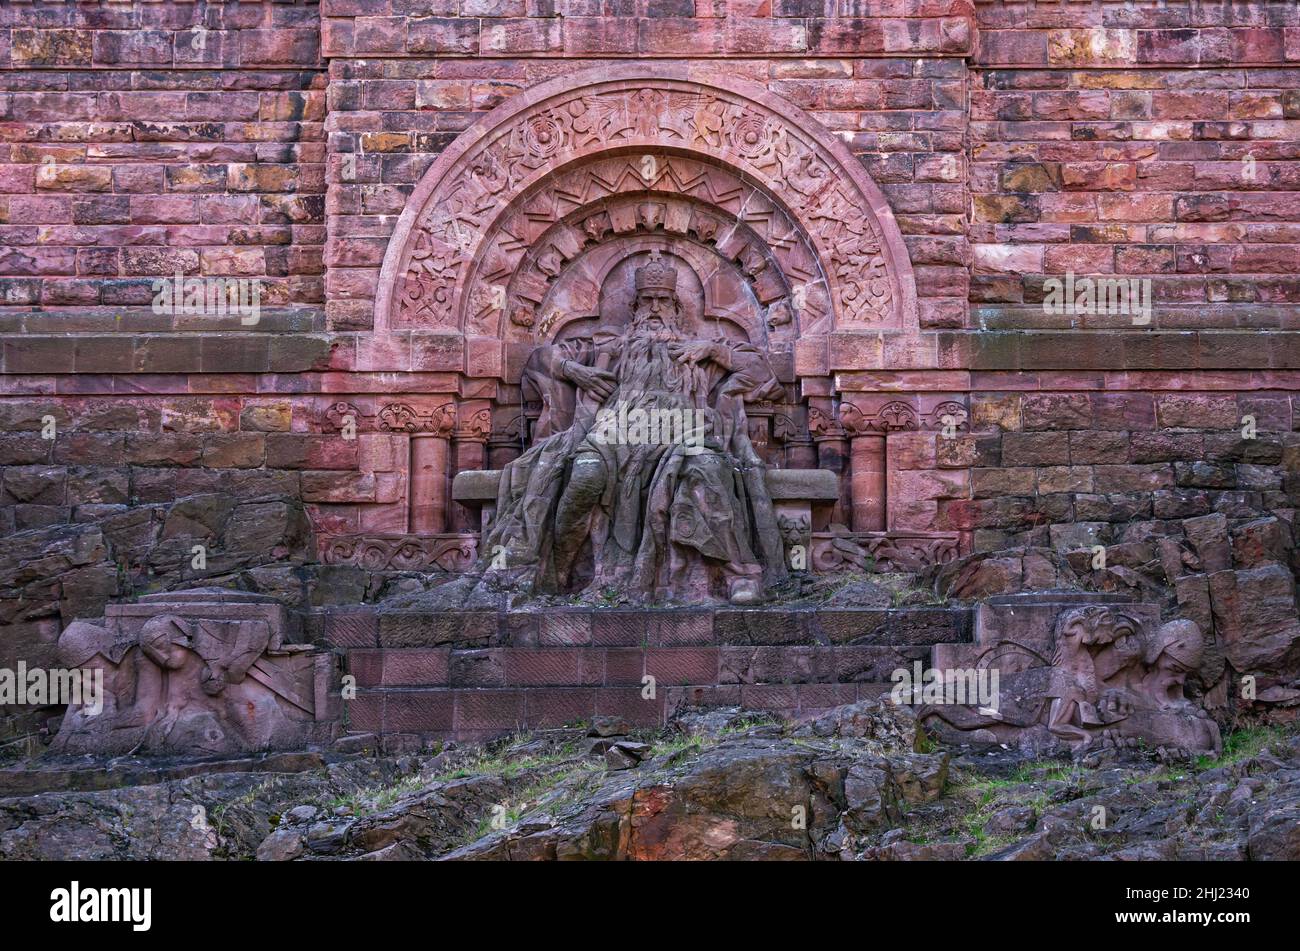 Kyffhäuser Denkmal auf dem Kyffhäuser Hügel, Thüringen, Deutschland, 14. August 2017, Ansicht der Figur des Kaiser Friedrich I. Barbarossa. Stockfoto